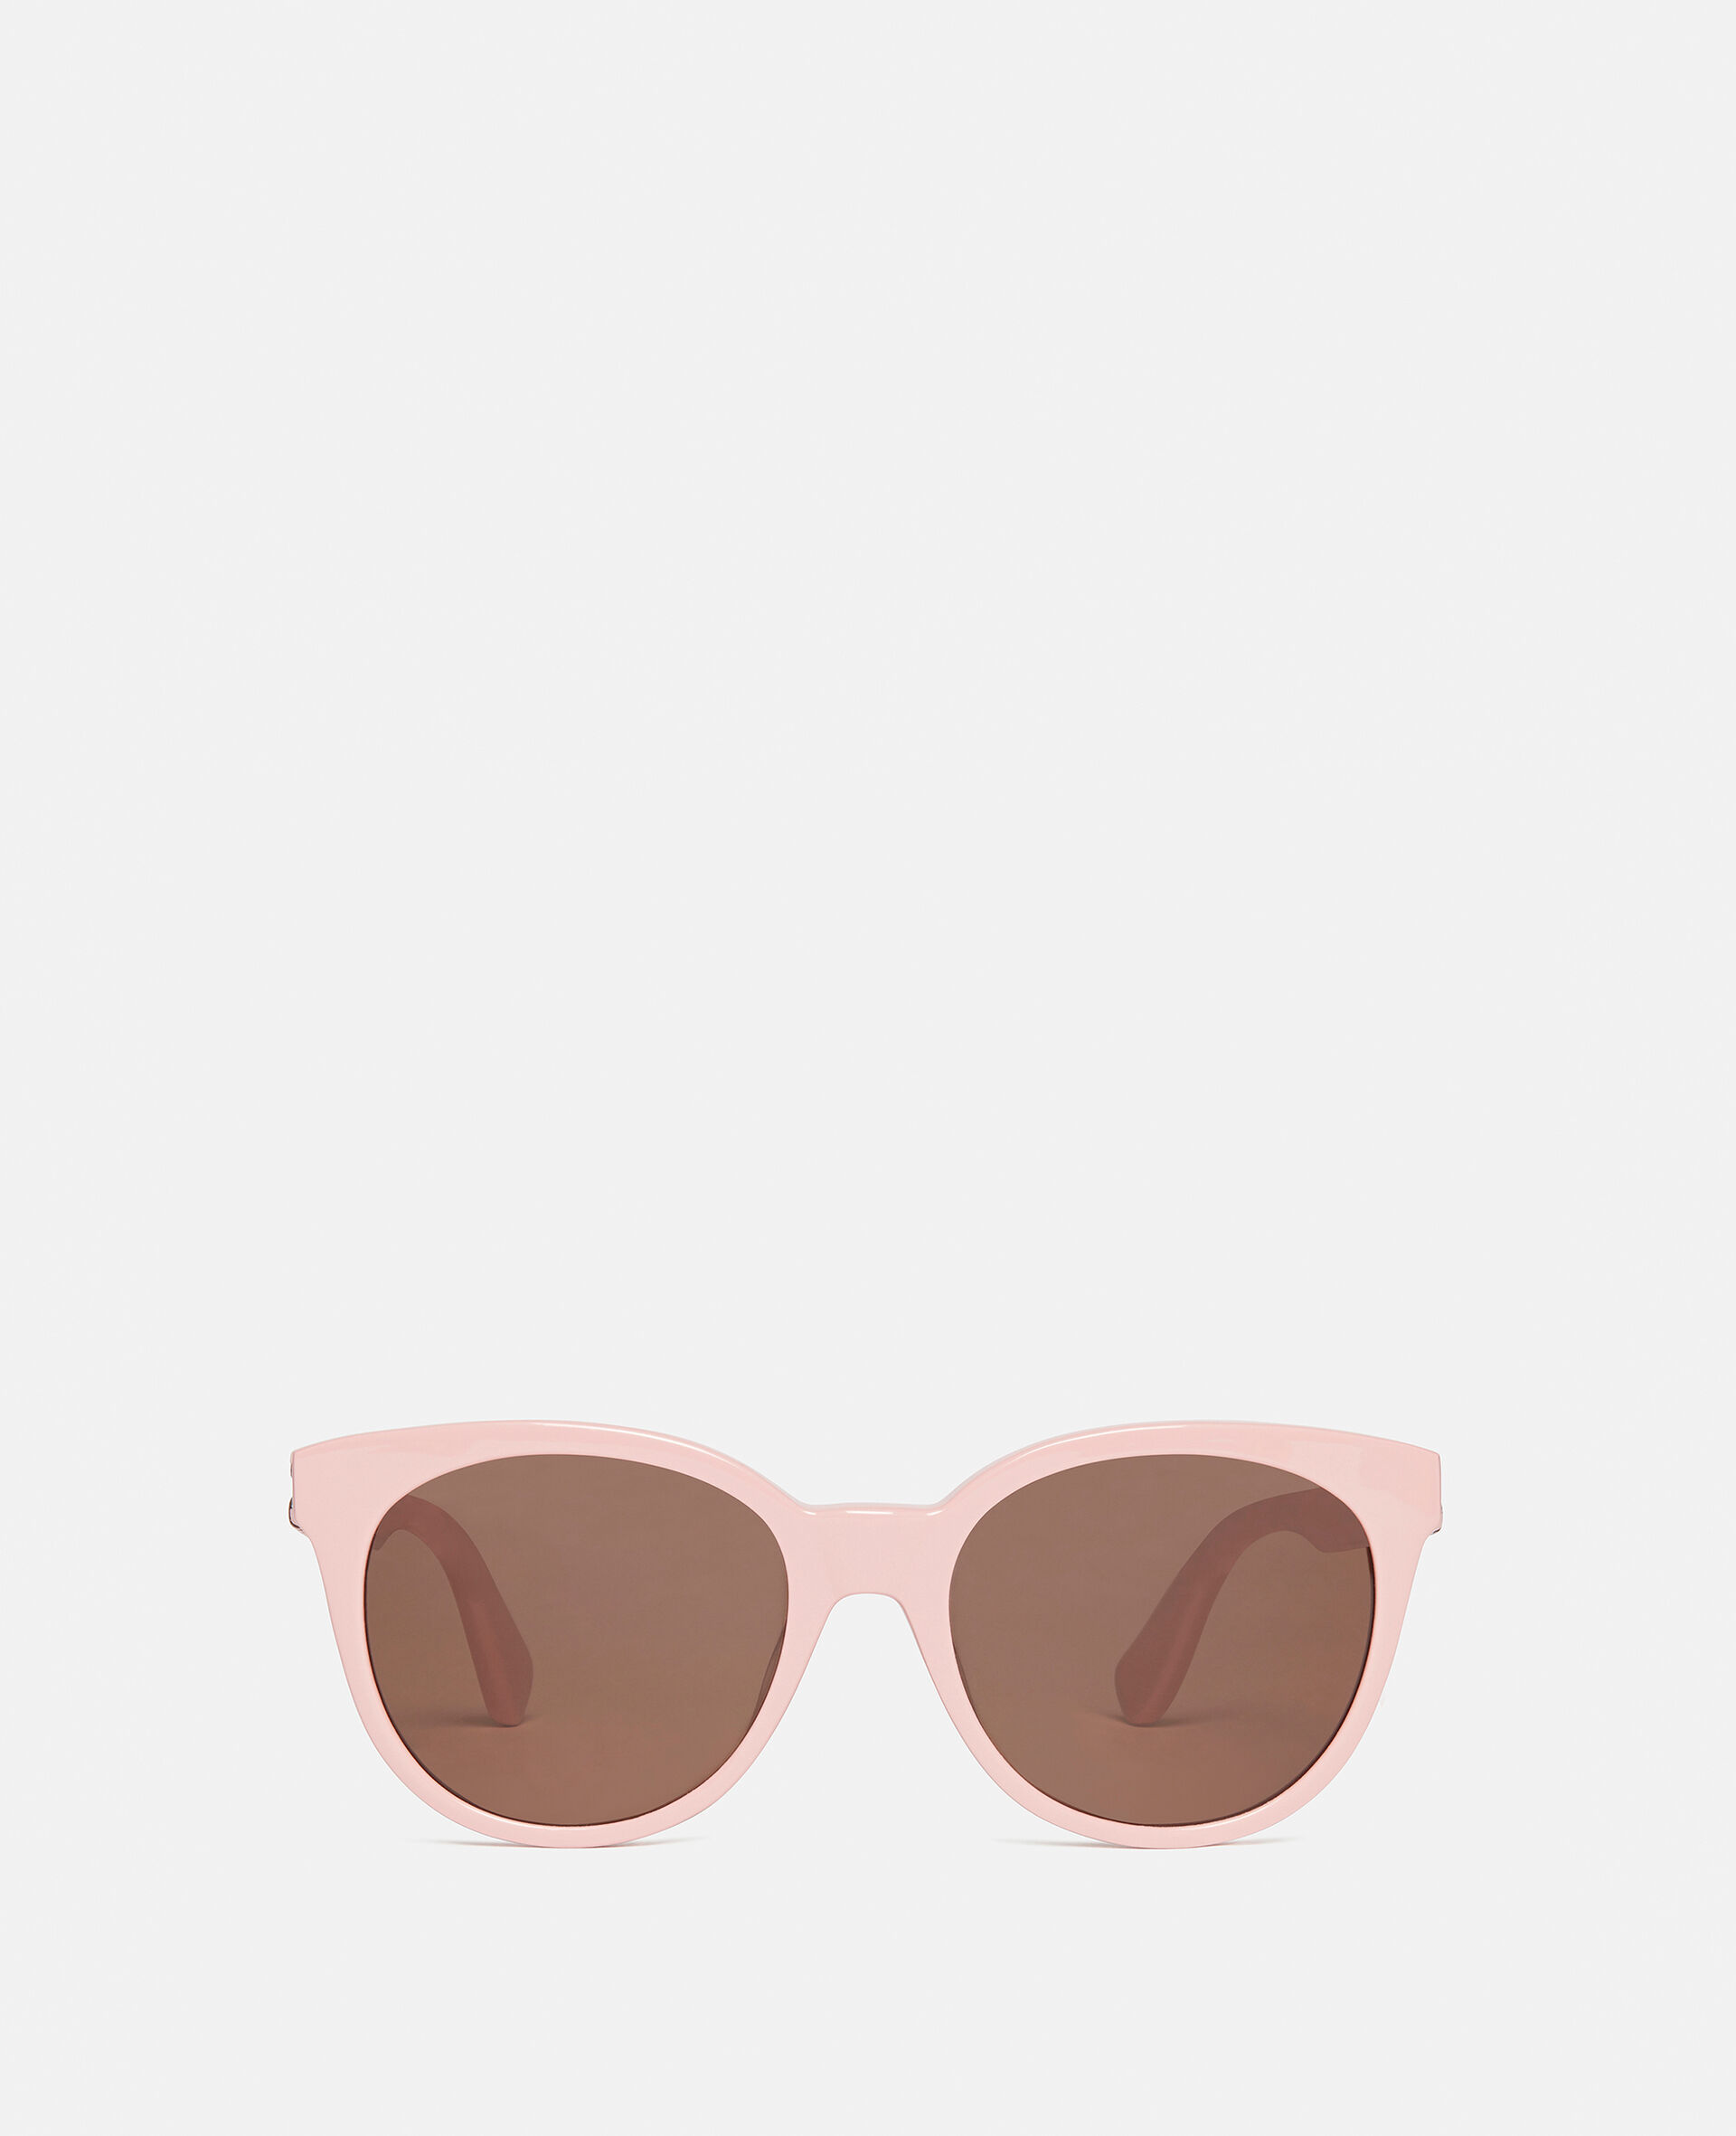 Oval Sunglasses-Black-large